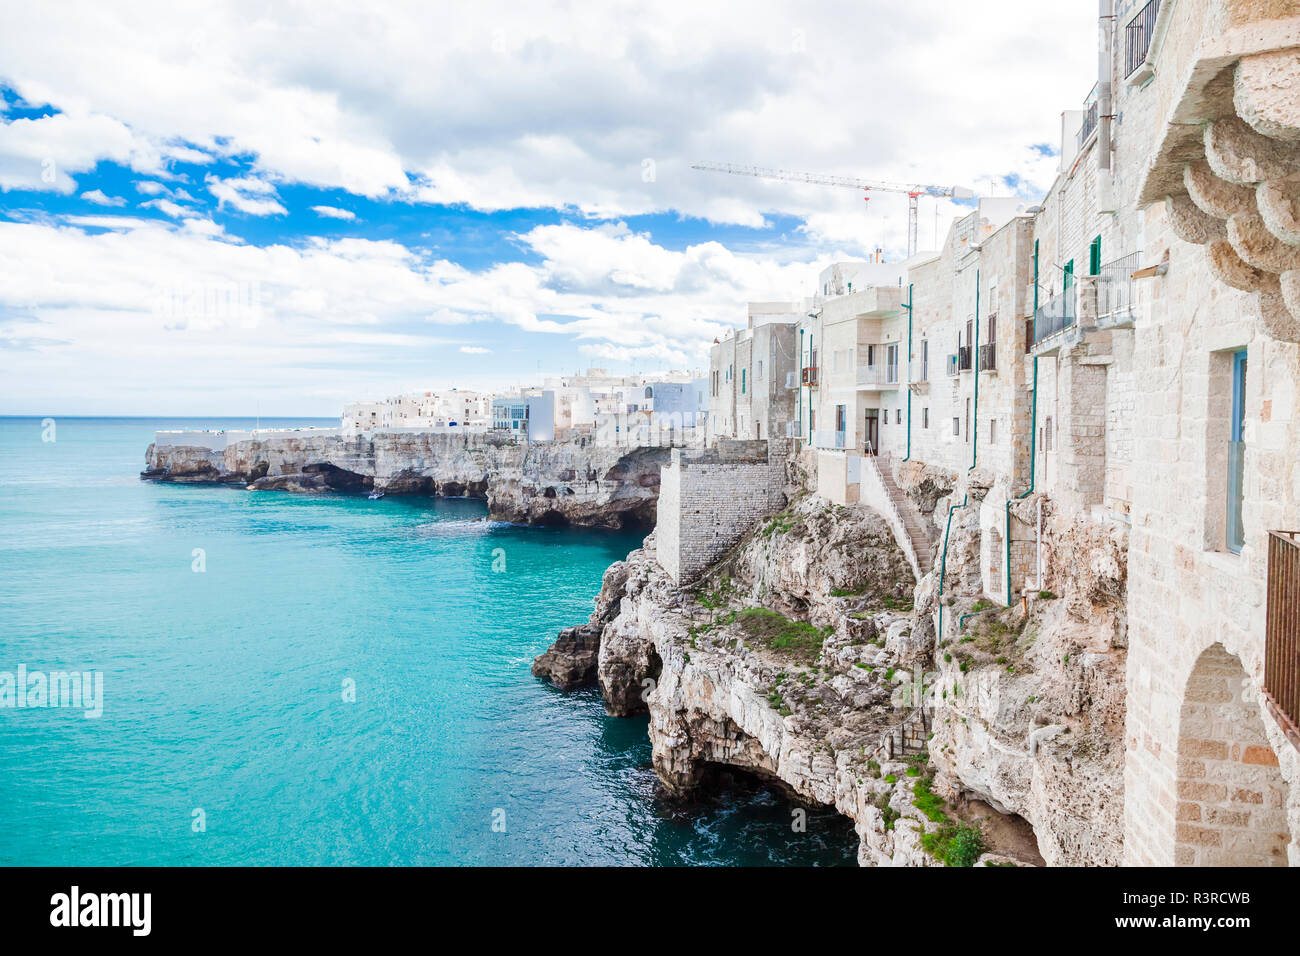 L'Italia, Puglia, Polognano a Mare, la vista della città vecchia storica al mare Foto Stock